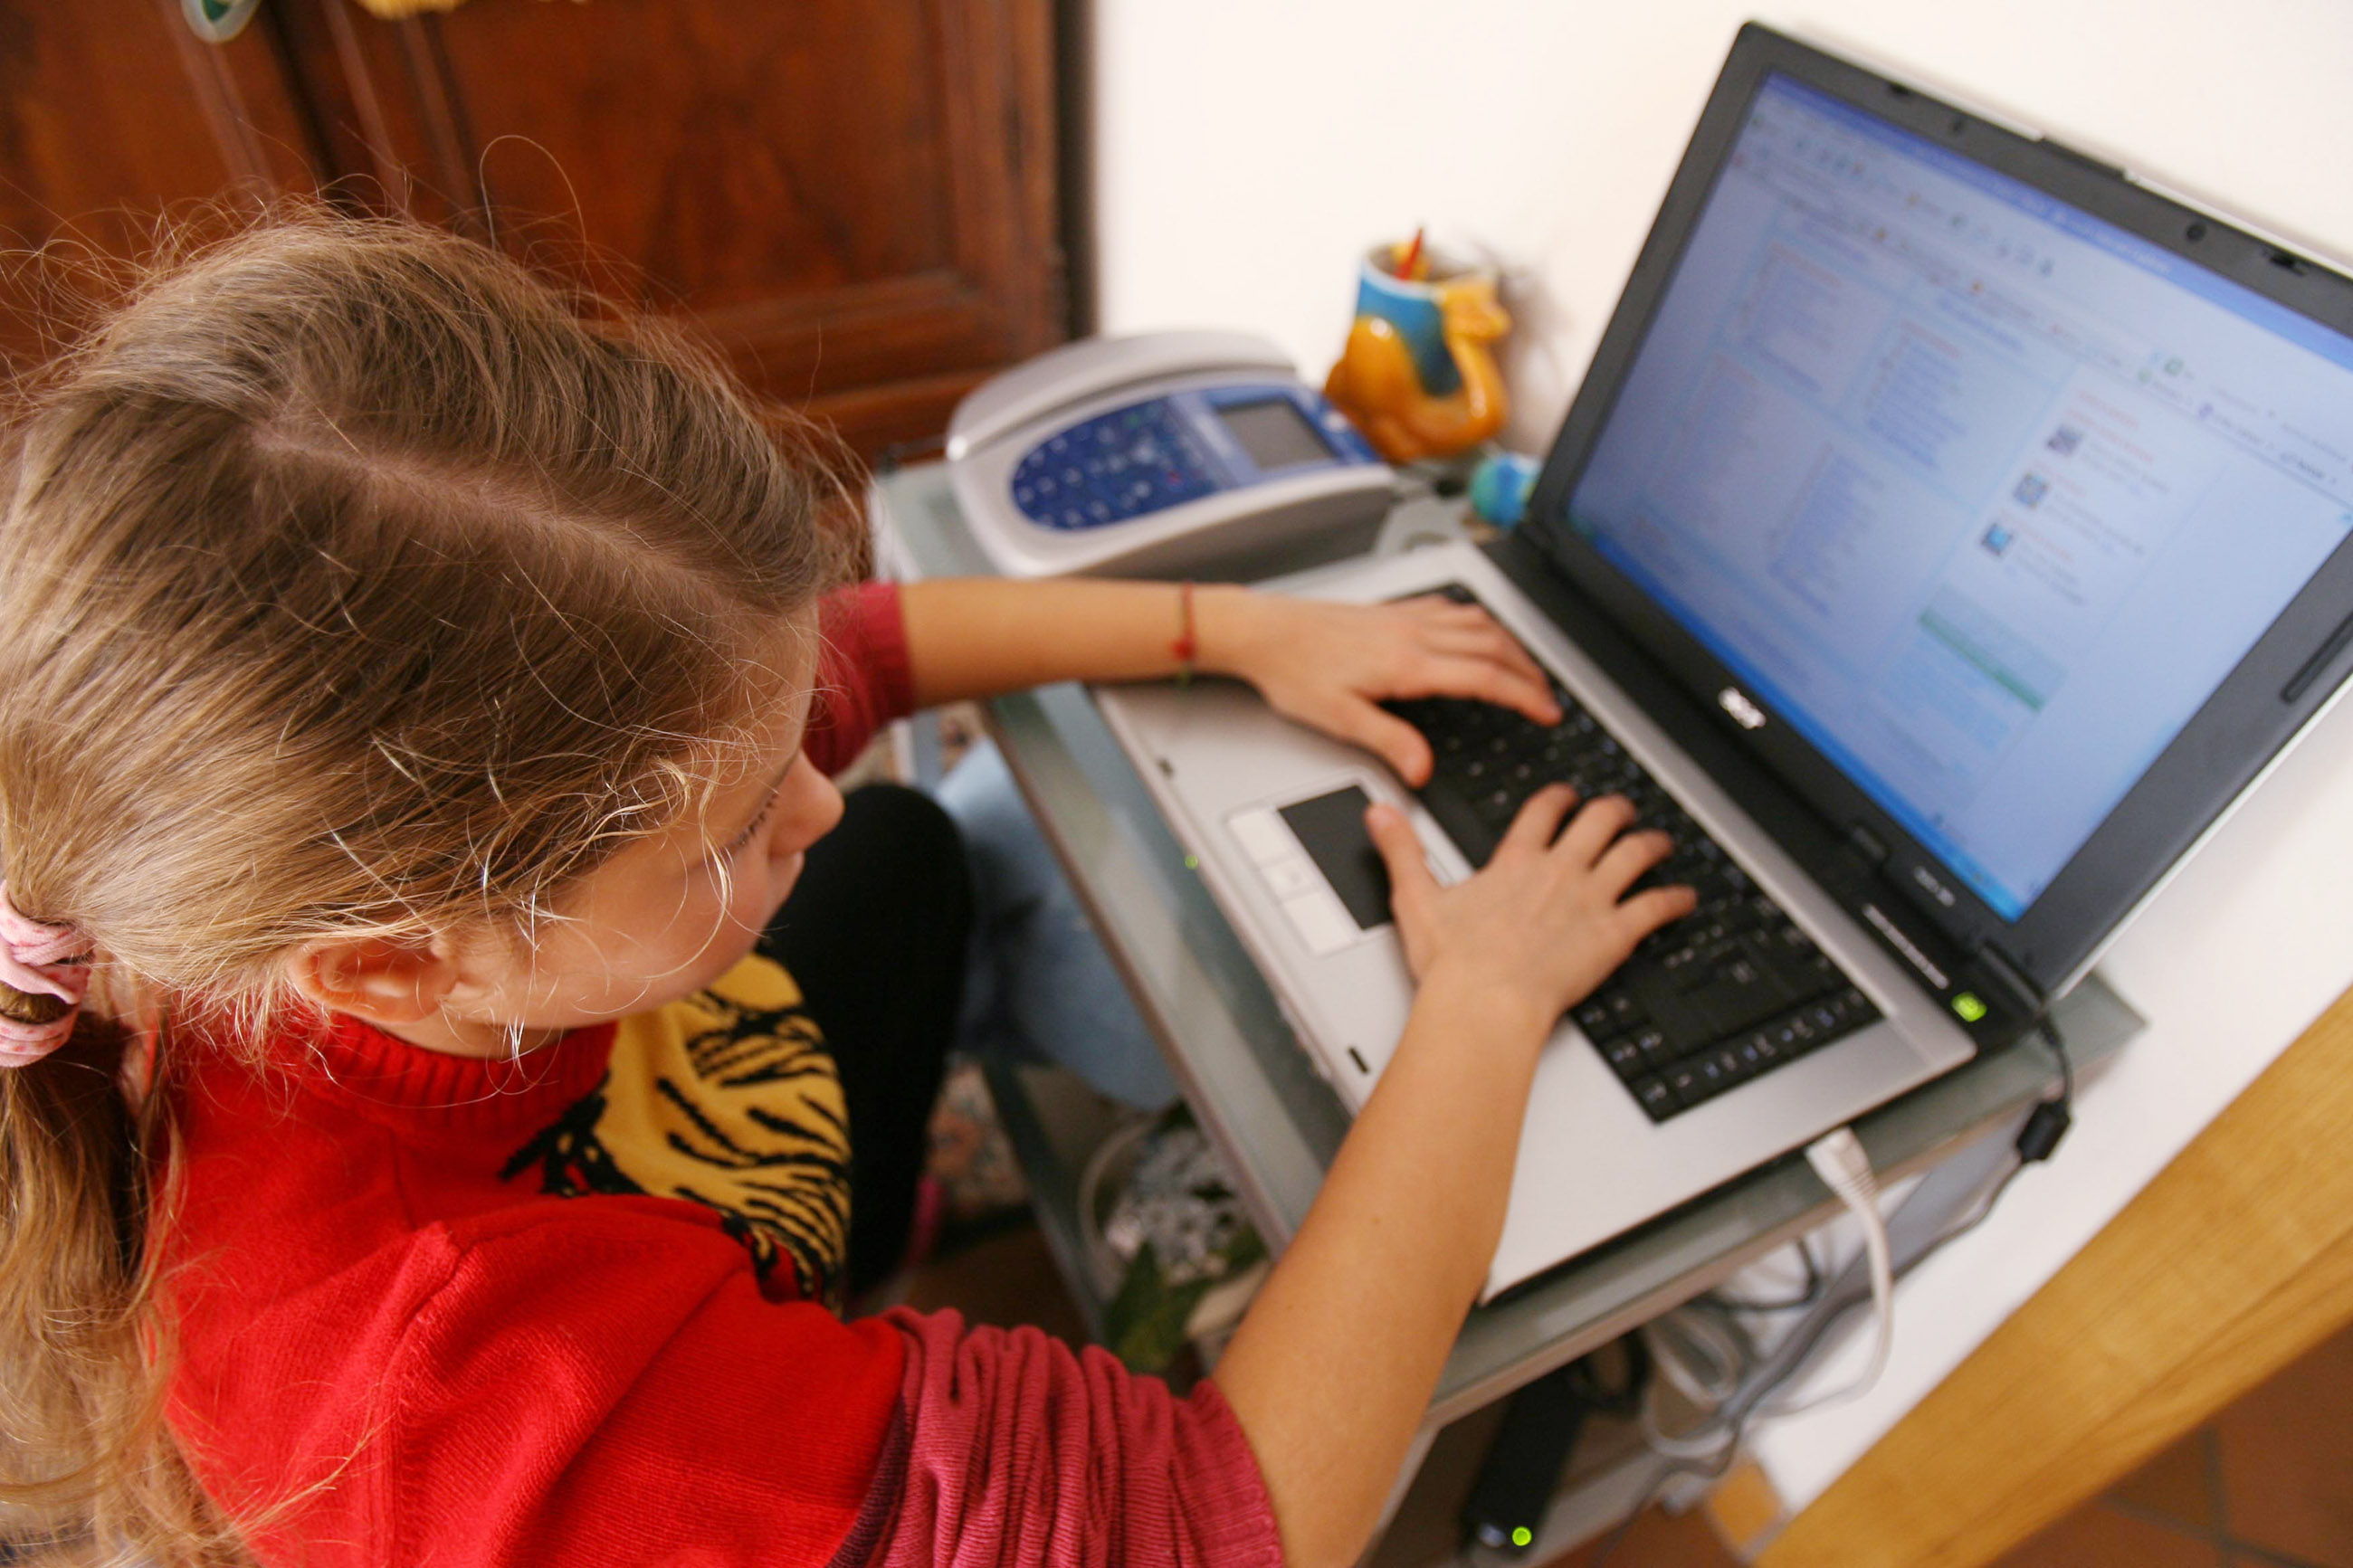 Малолетняя д. Несовершеннолетний в социальной сети. Подросток за компьютером. Компьютерные девочки маленькие. Совращение несовершеннолетней в интернете.